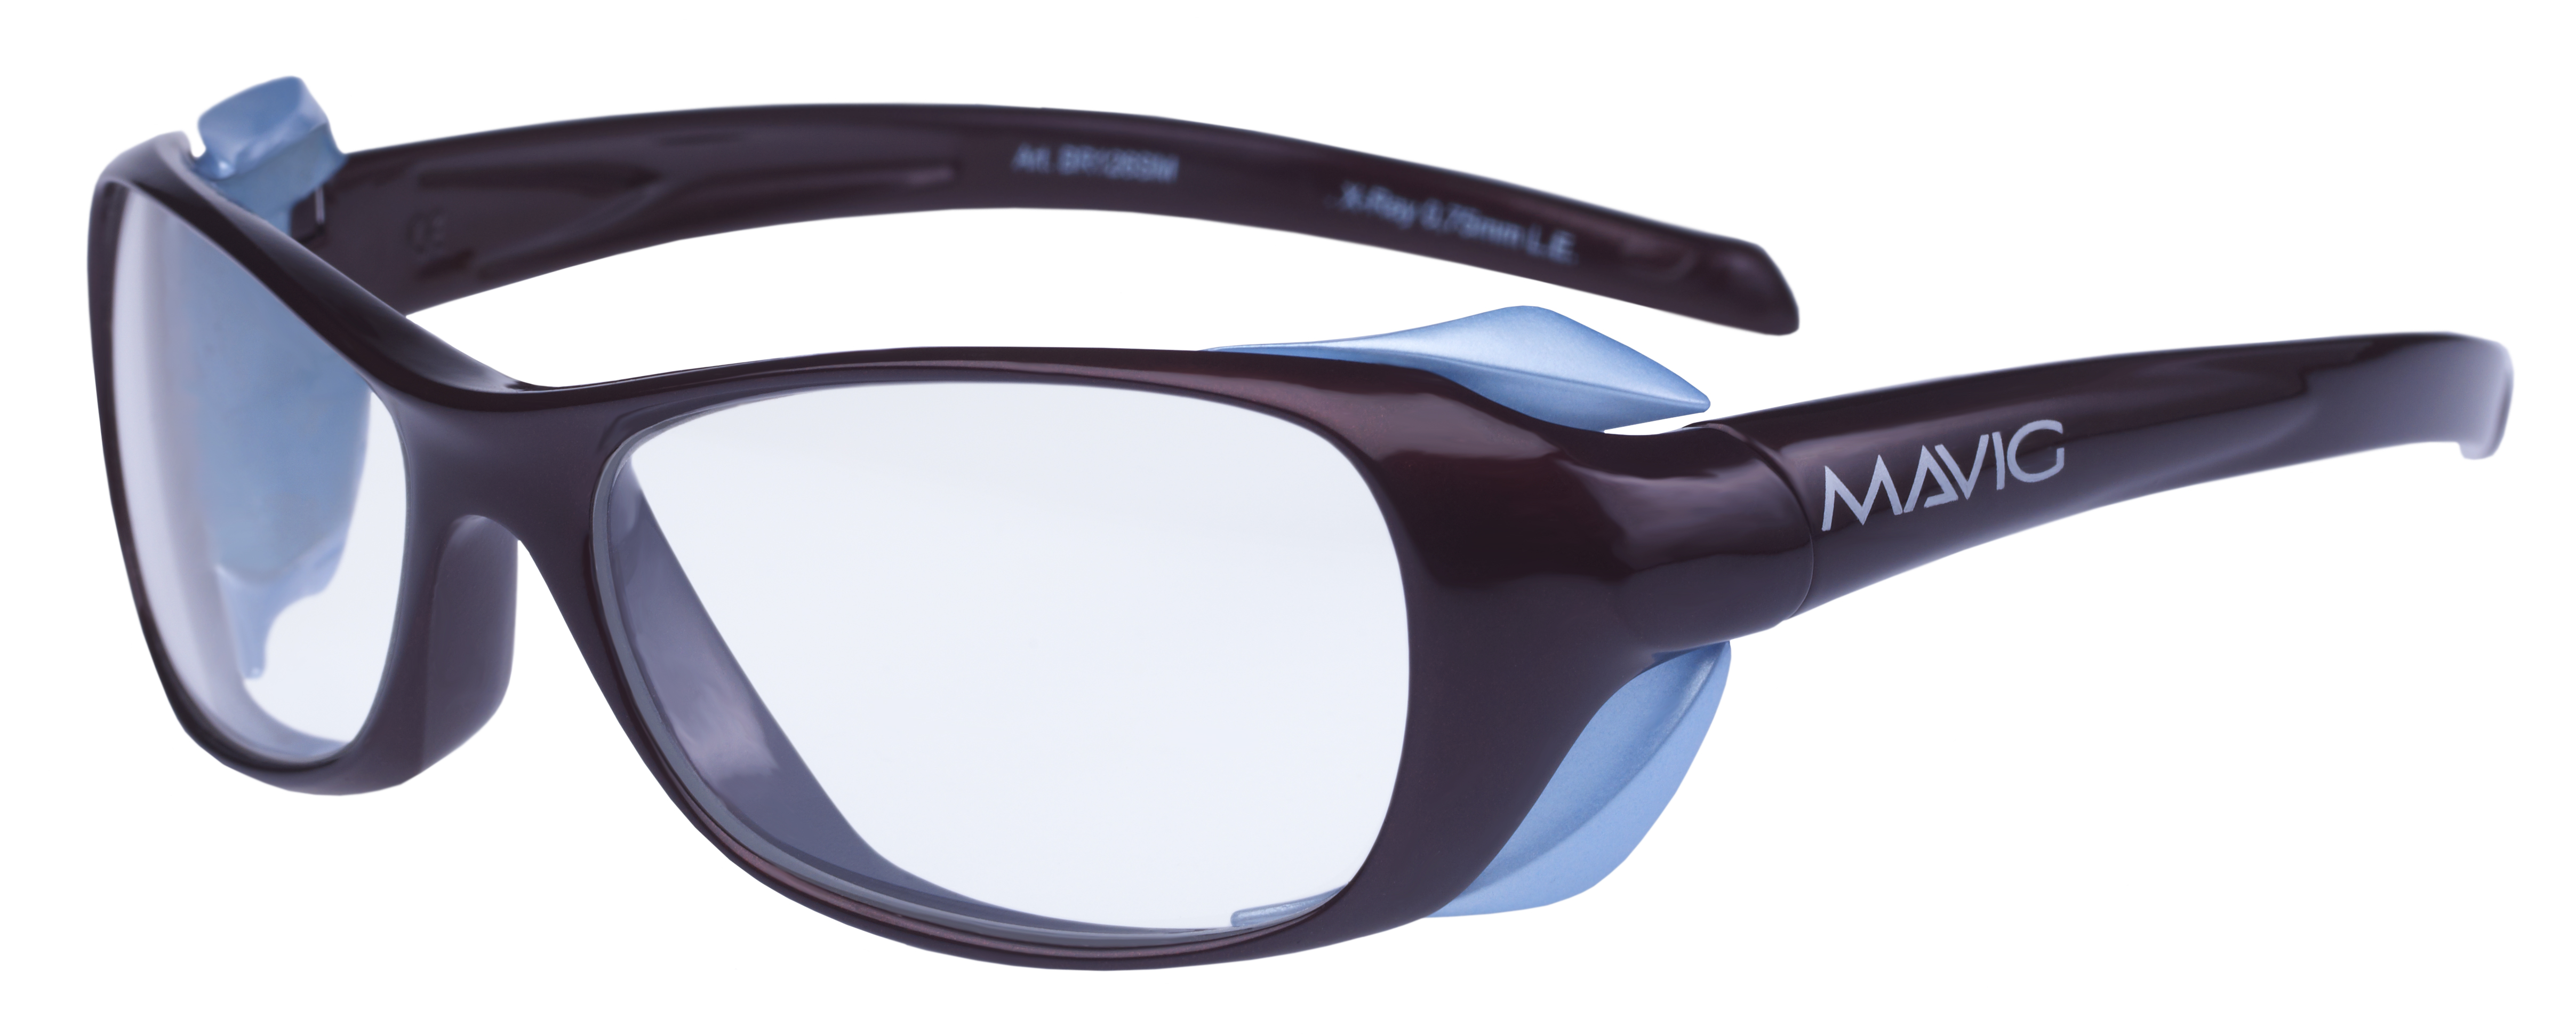 silmäsuojalasit, jotka suojaavat silmää myös sivusuunnasta tulevalta säteilyltä, 0,5-0,75 mmPb